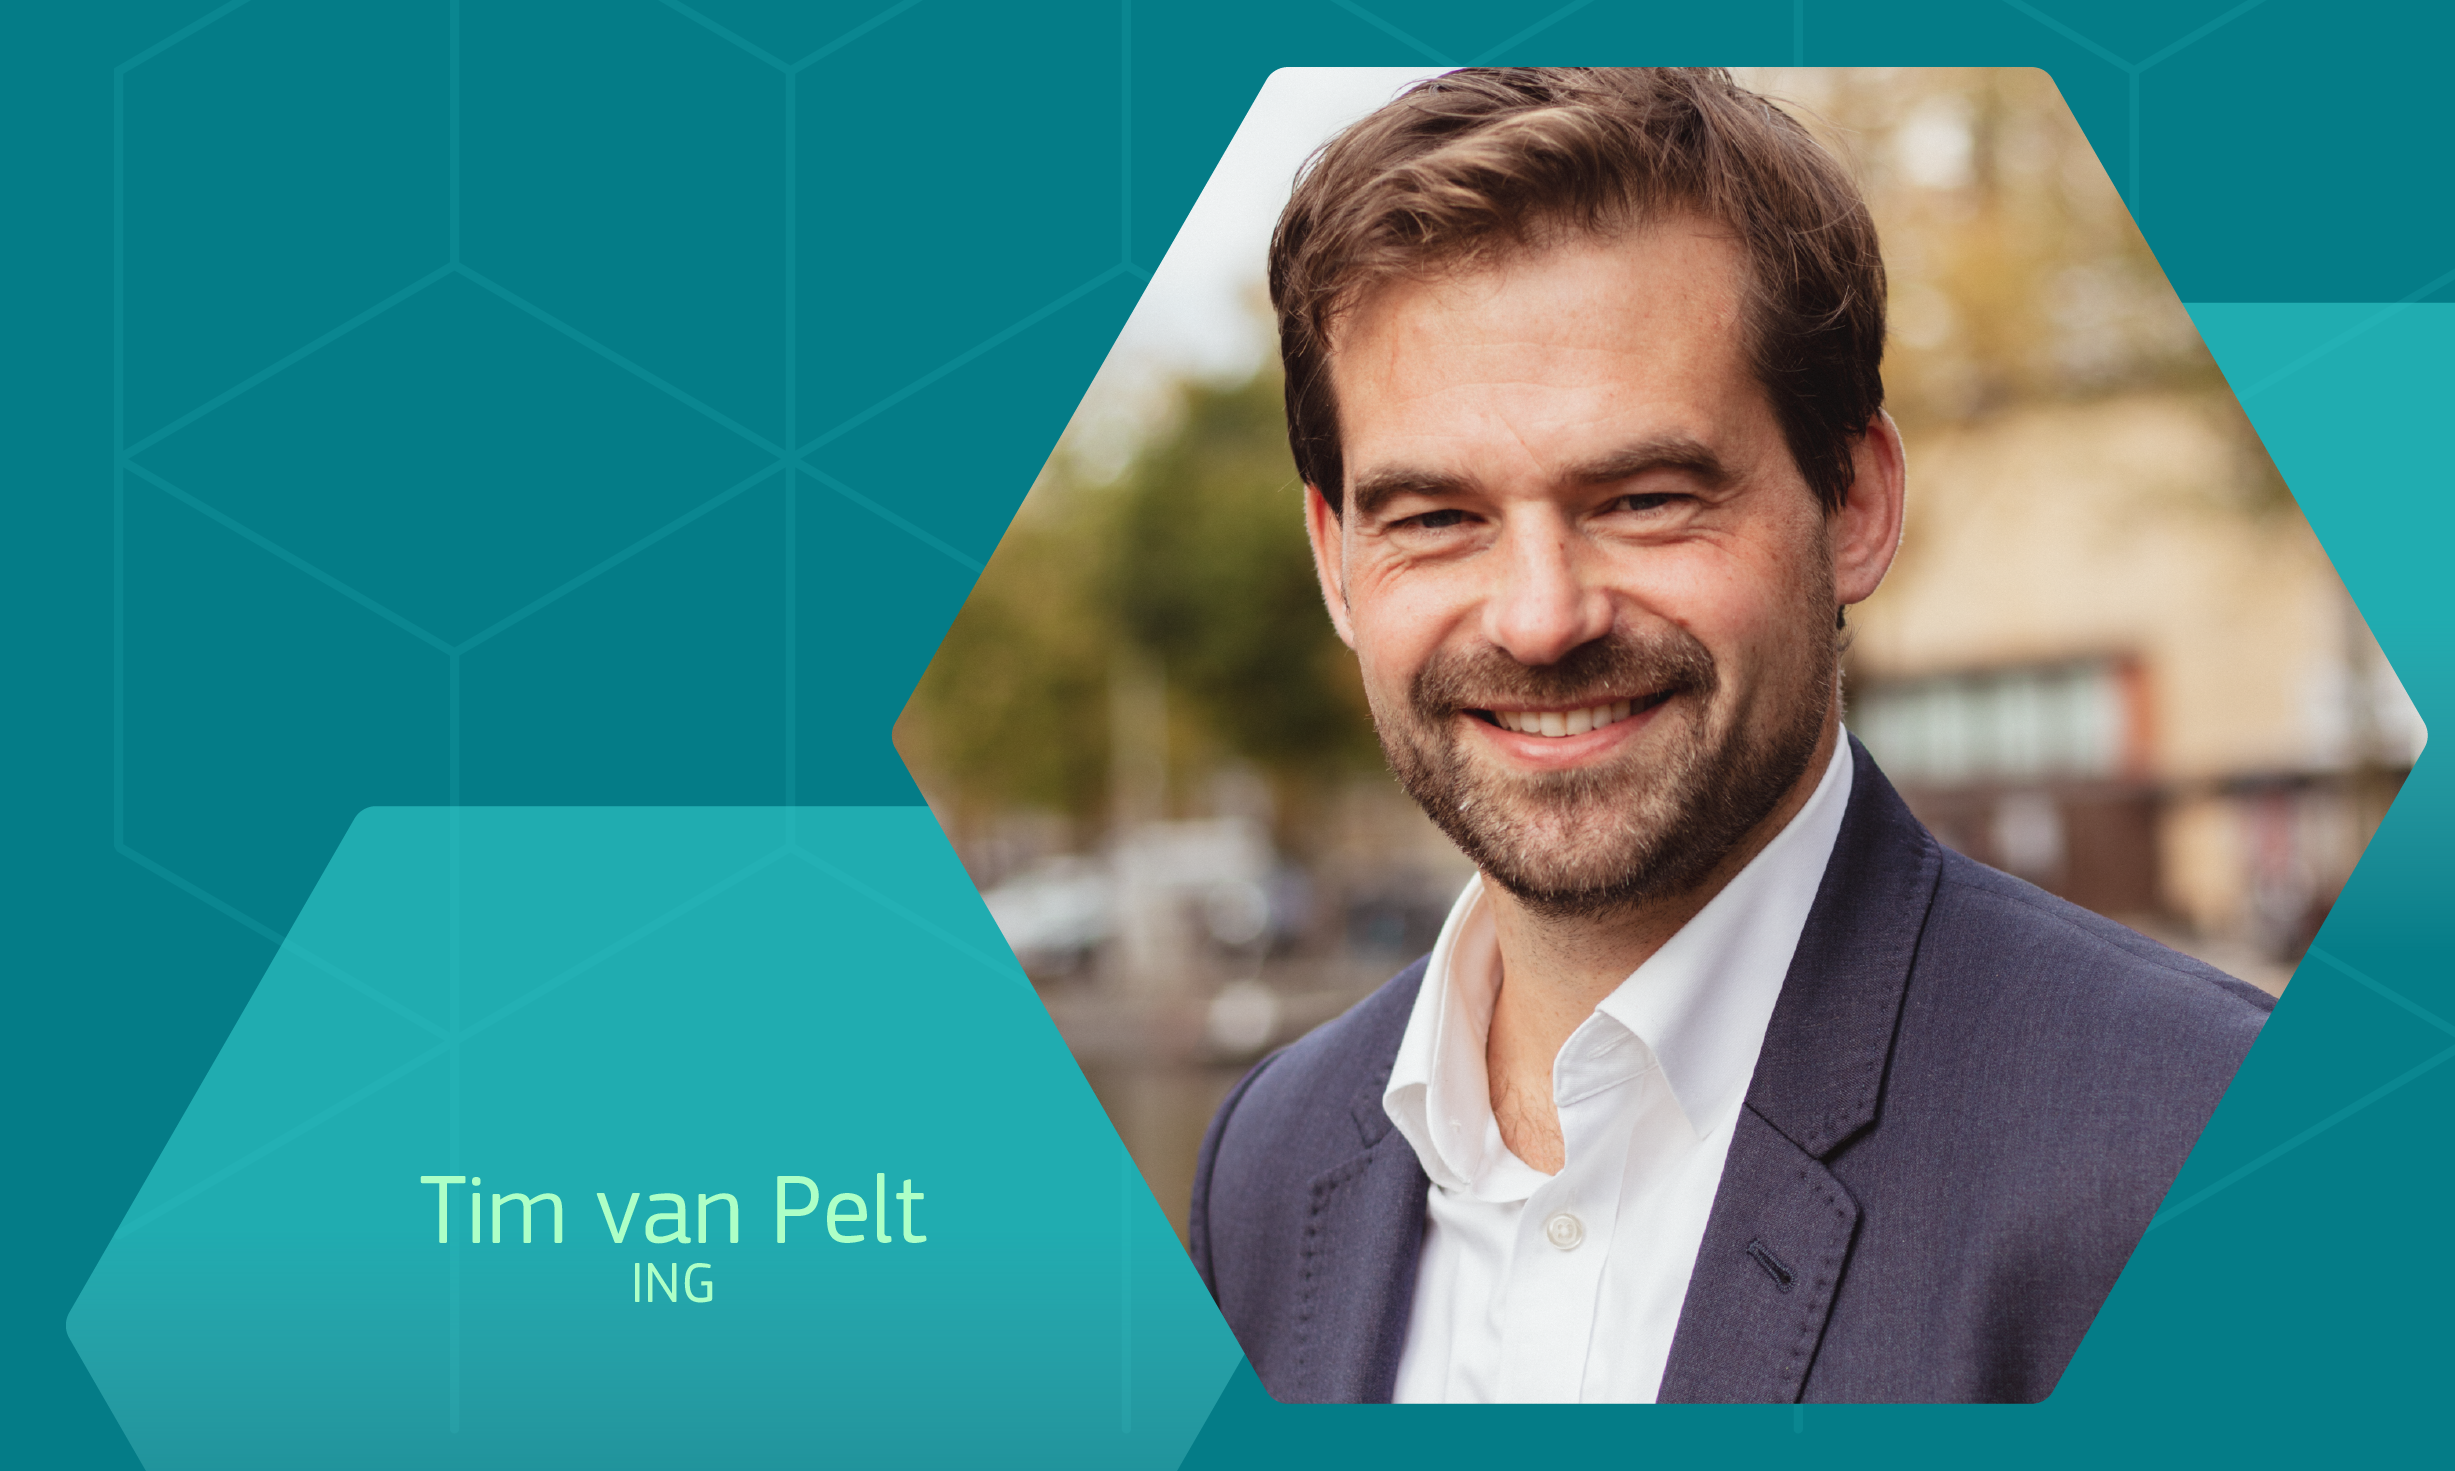 Tim van Pelt